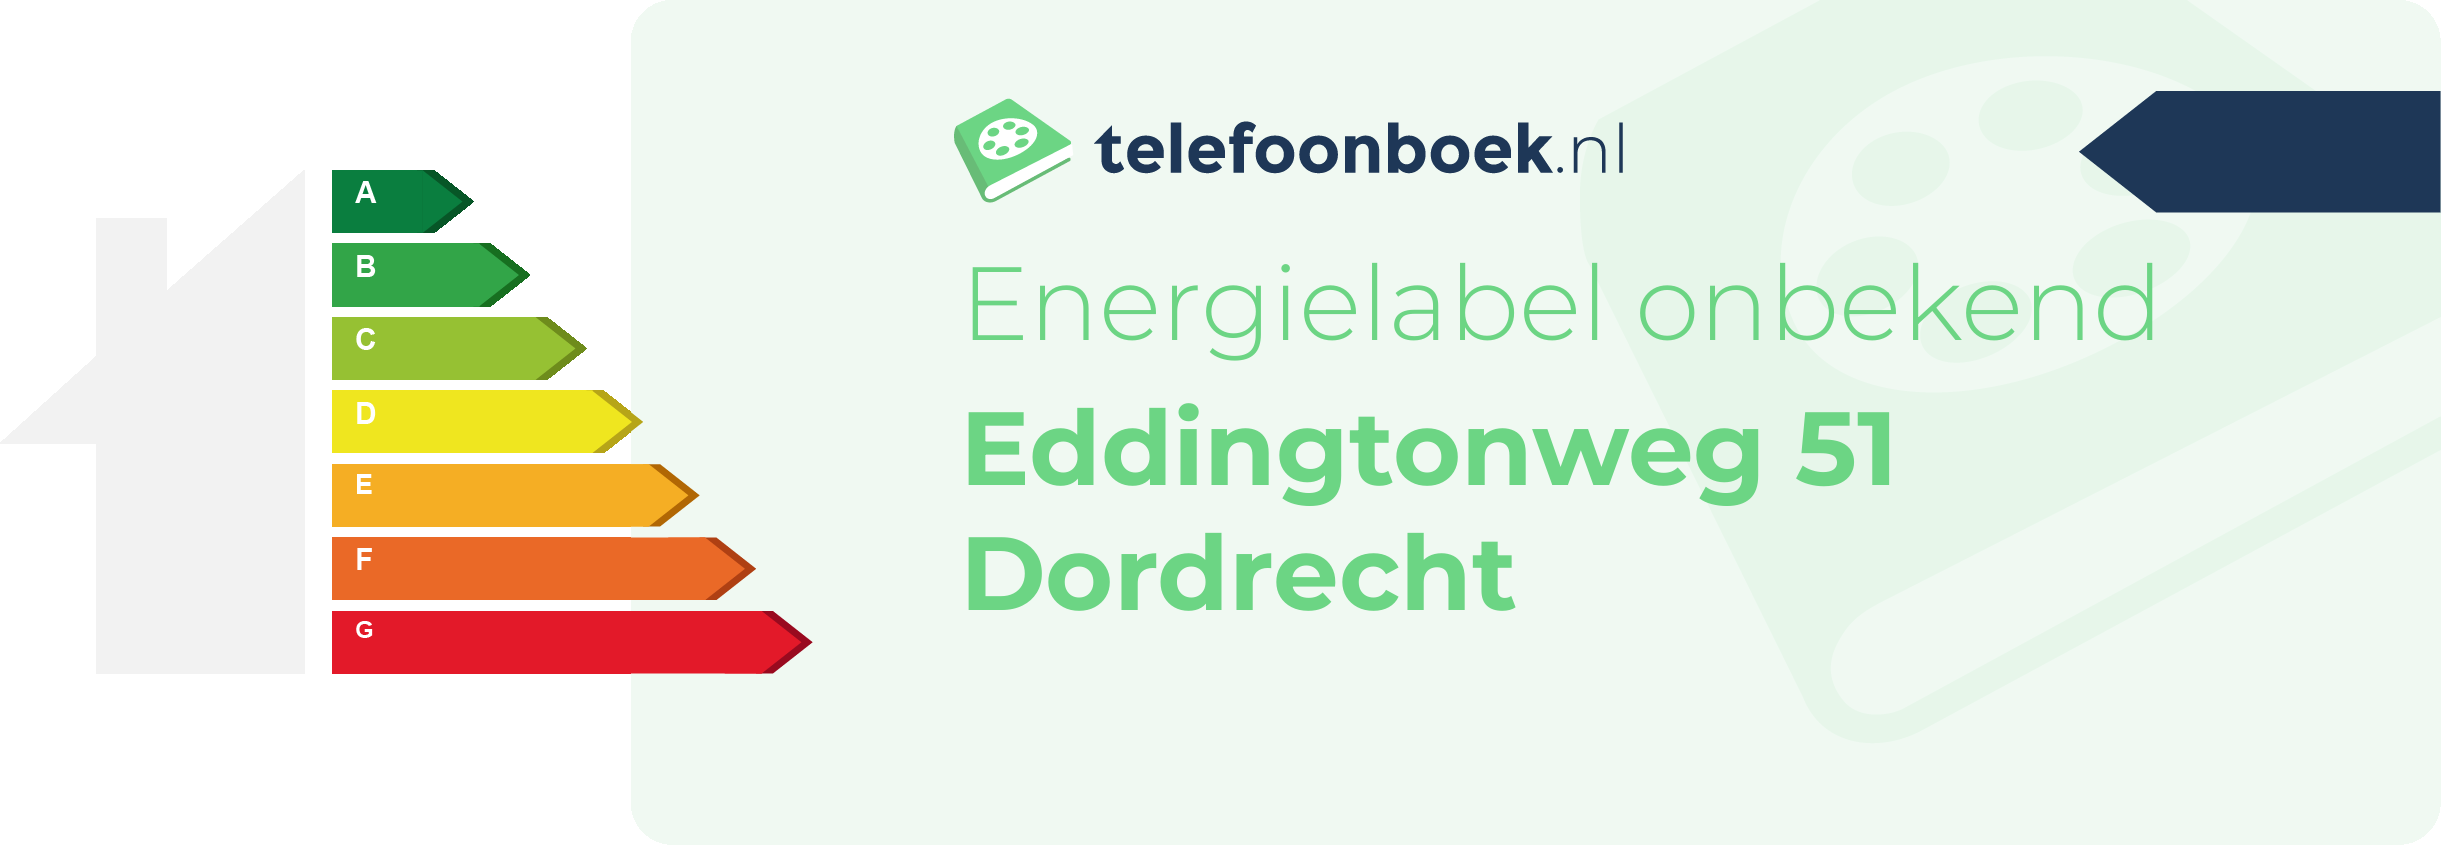 Energielabel Eddingtonweg 51 Dordrecht